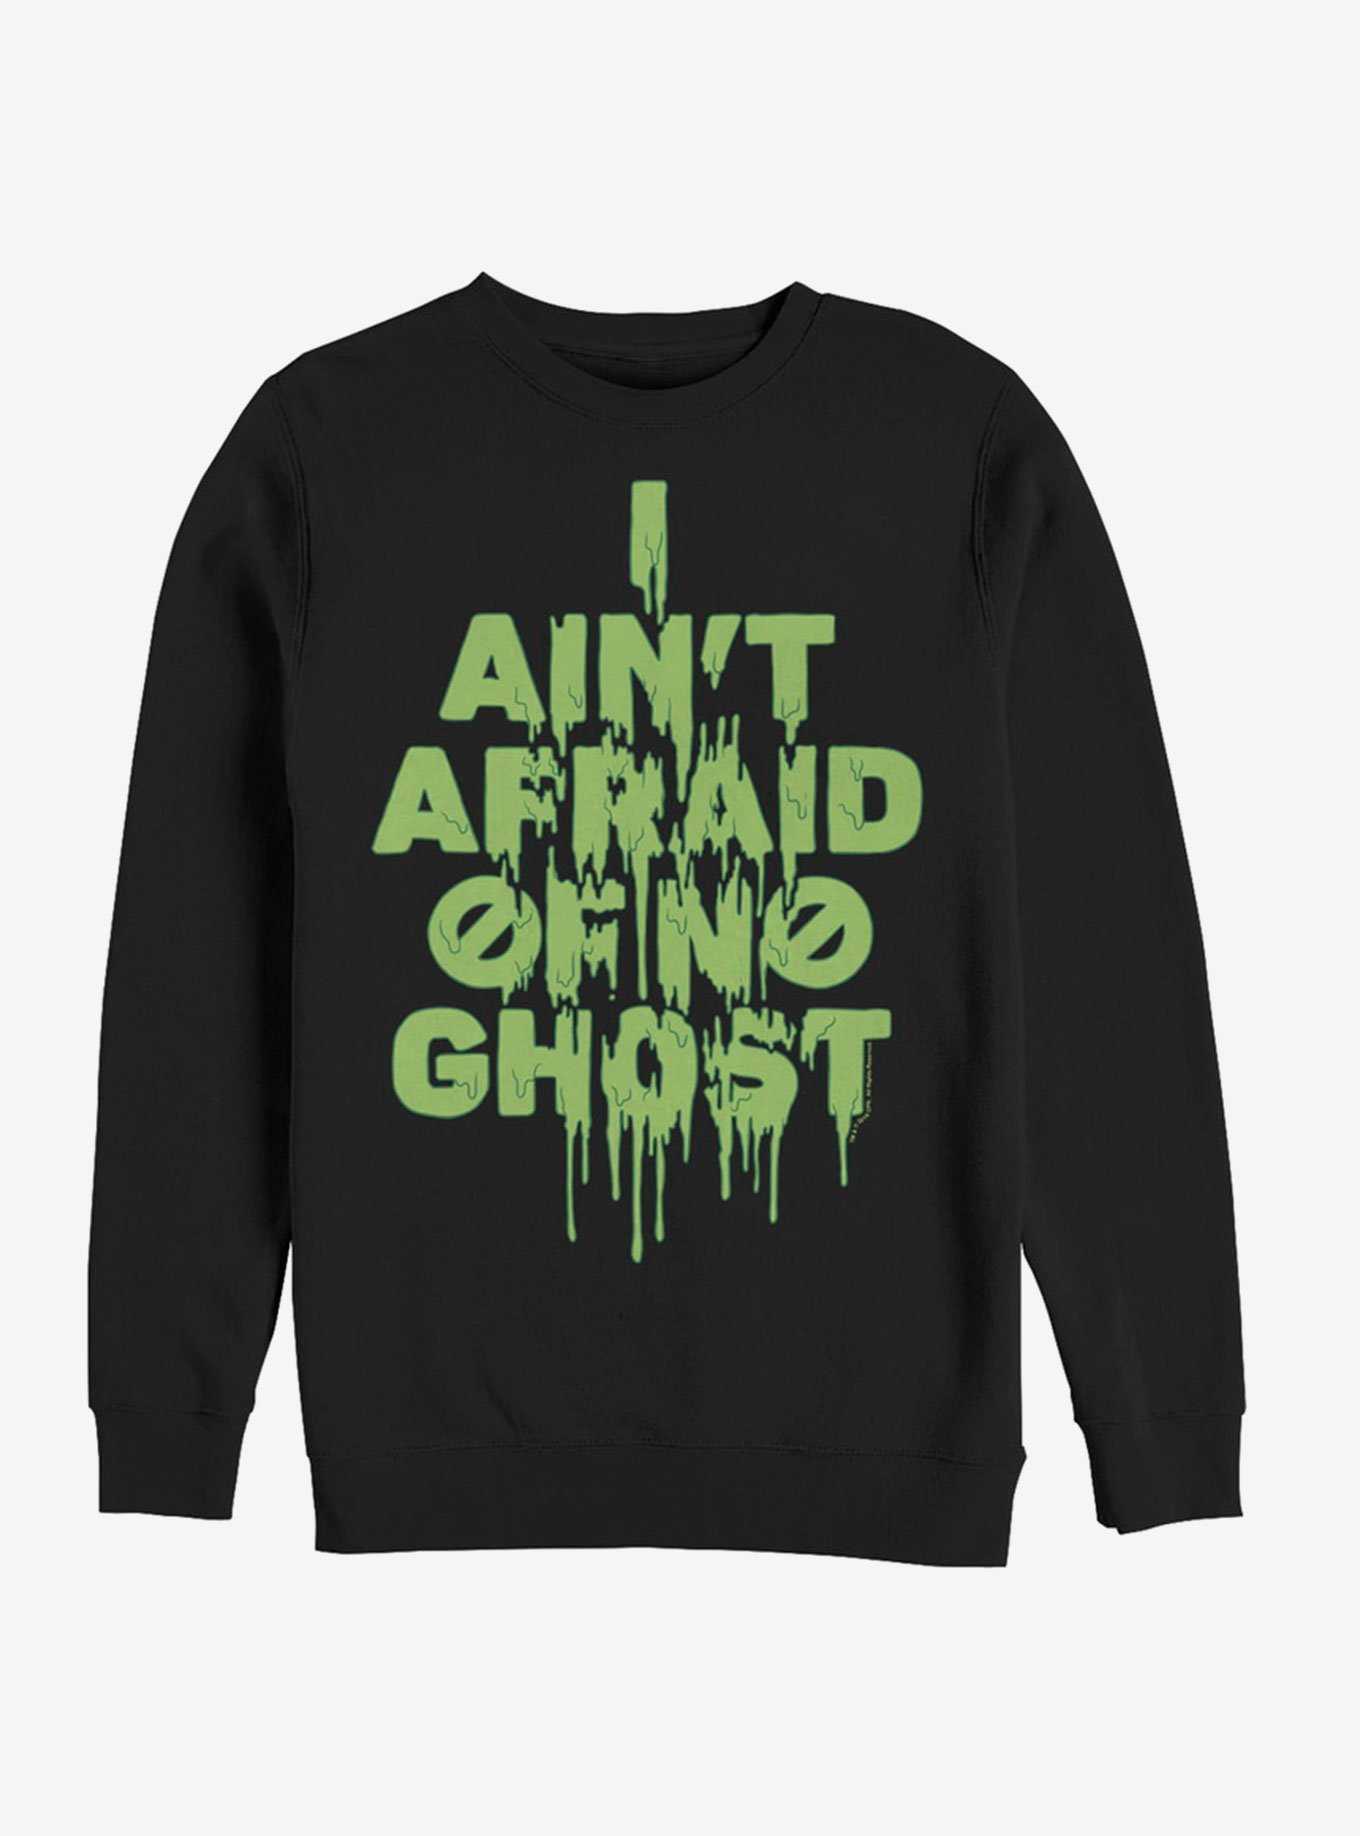 Ghostbusters Ain't Afraid Slime Sweatshirt, , hi-res